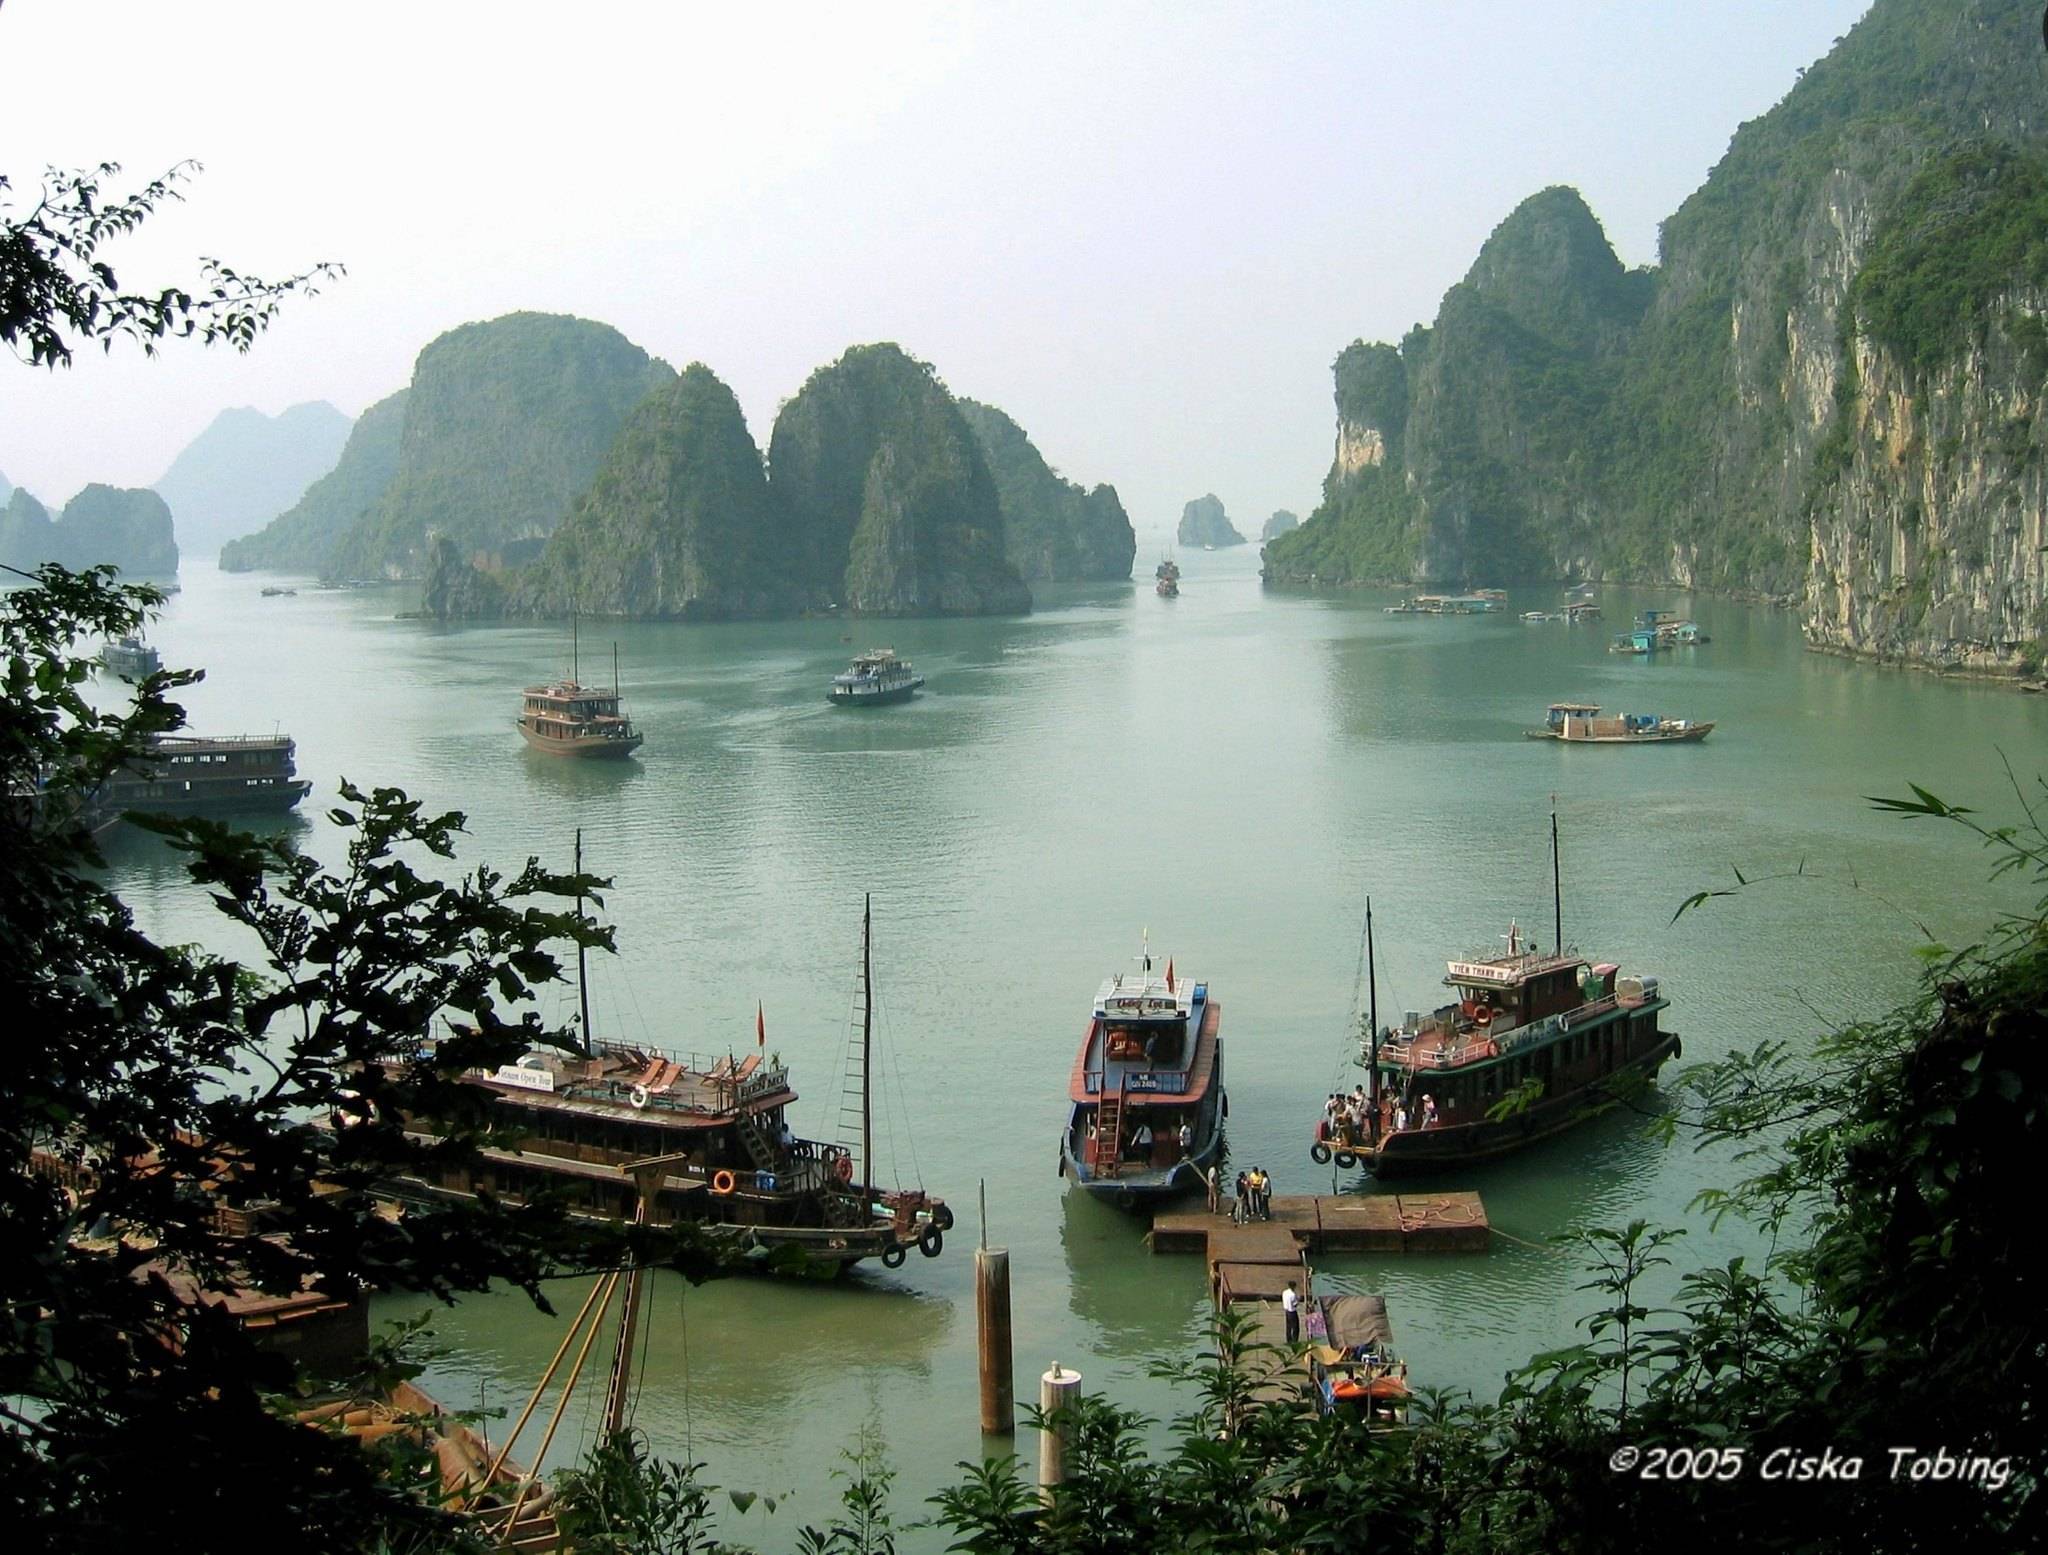 Вьетнам - страна в юва, описание и фото с отдыха во вьетнаме - 2022